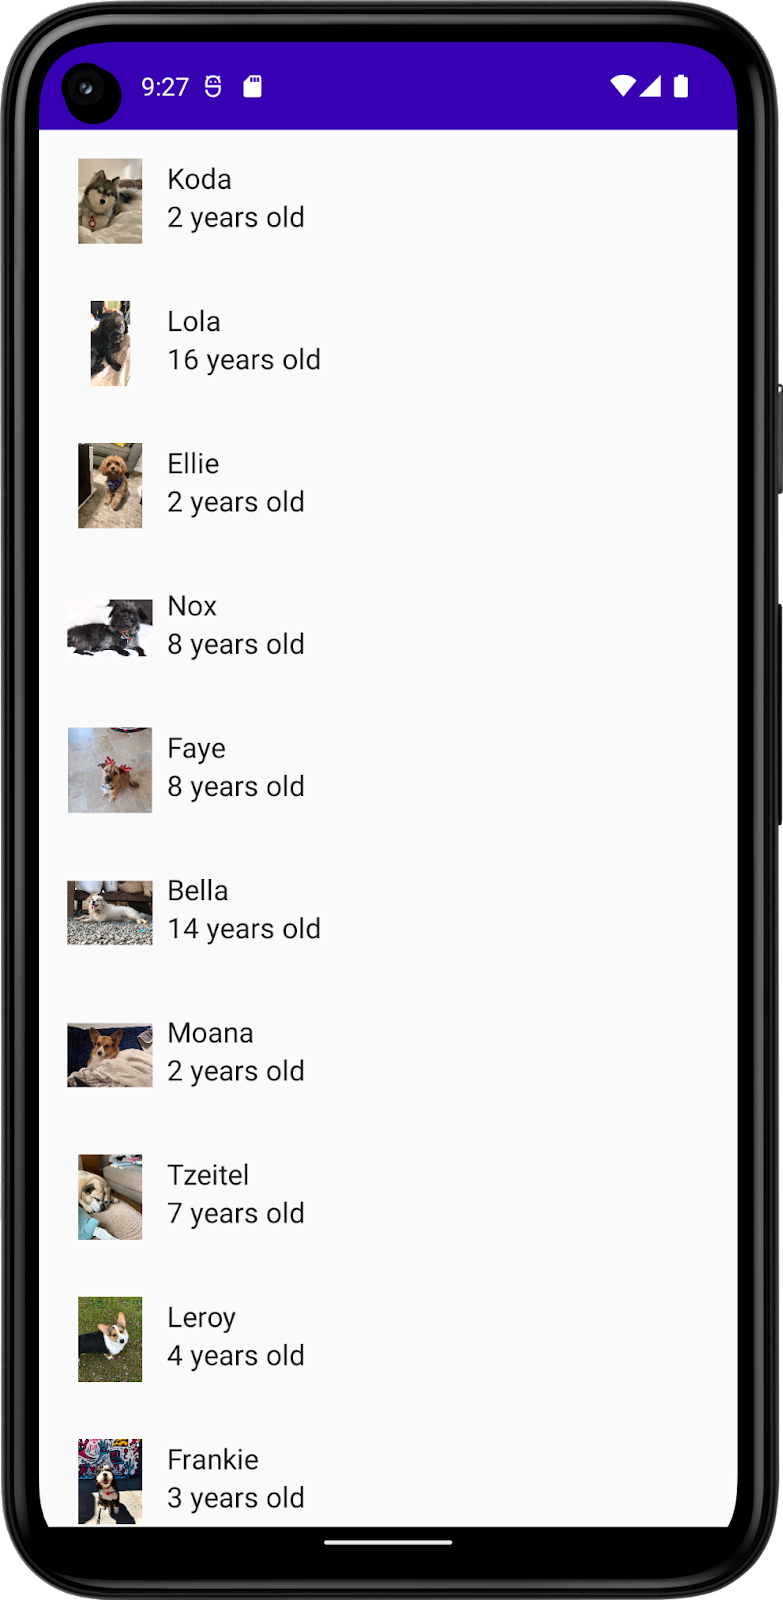 此图片显示了一款应用，其中包含狗狗的列表，列表中包含狗狗的名字、照片和年龄。